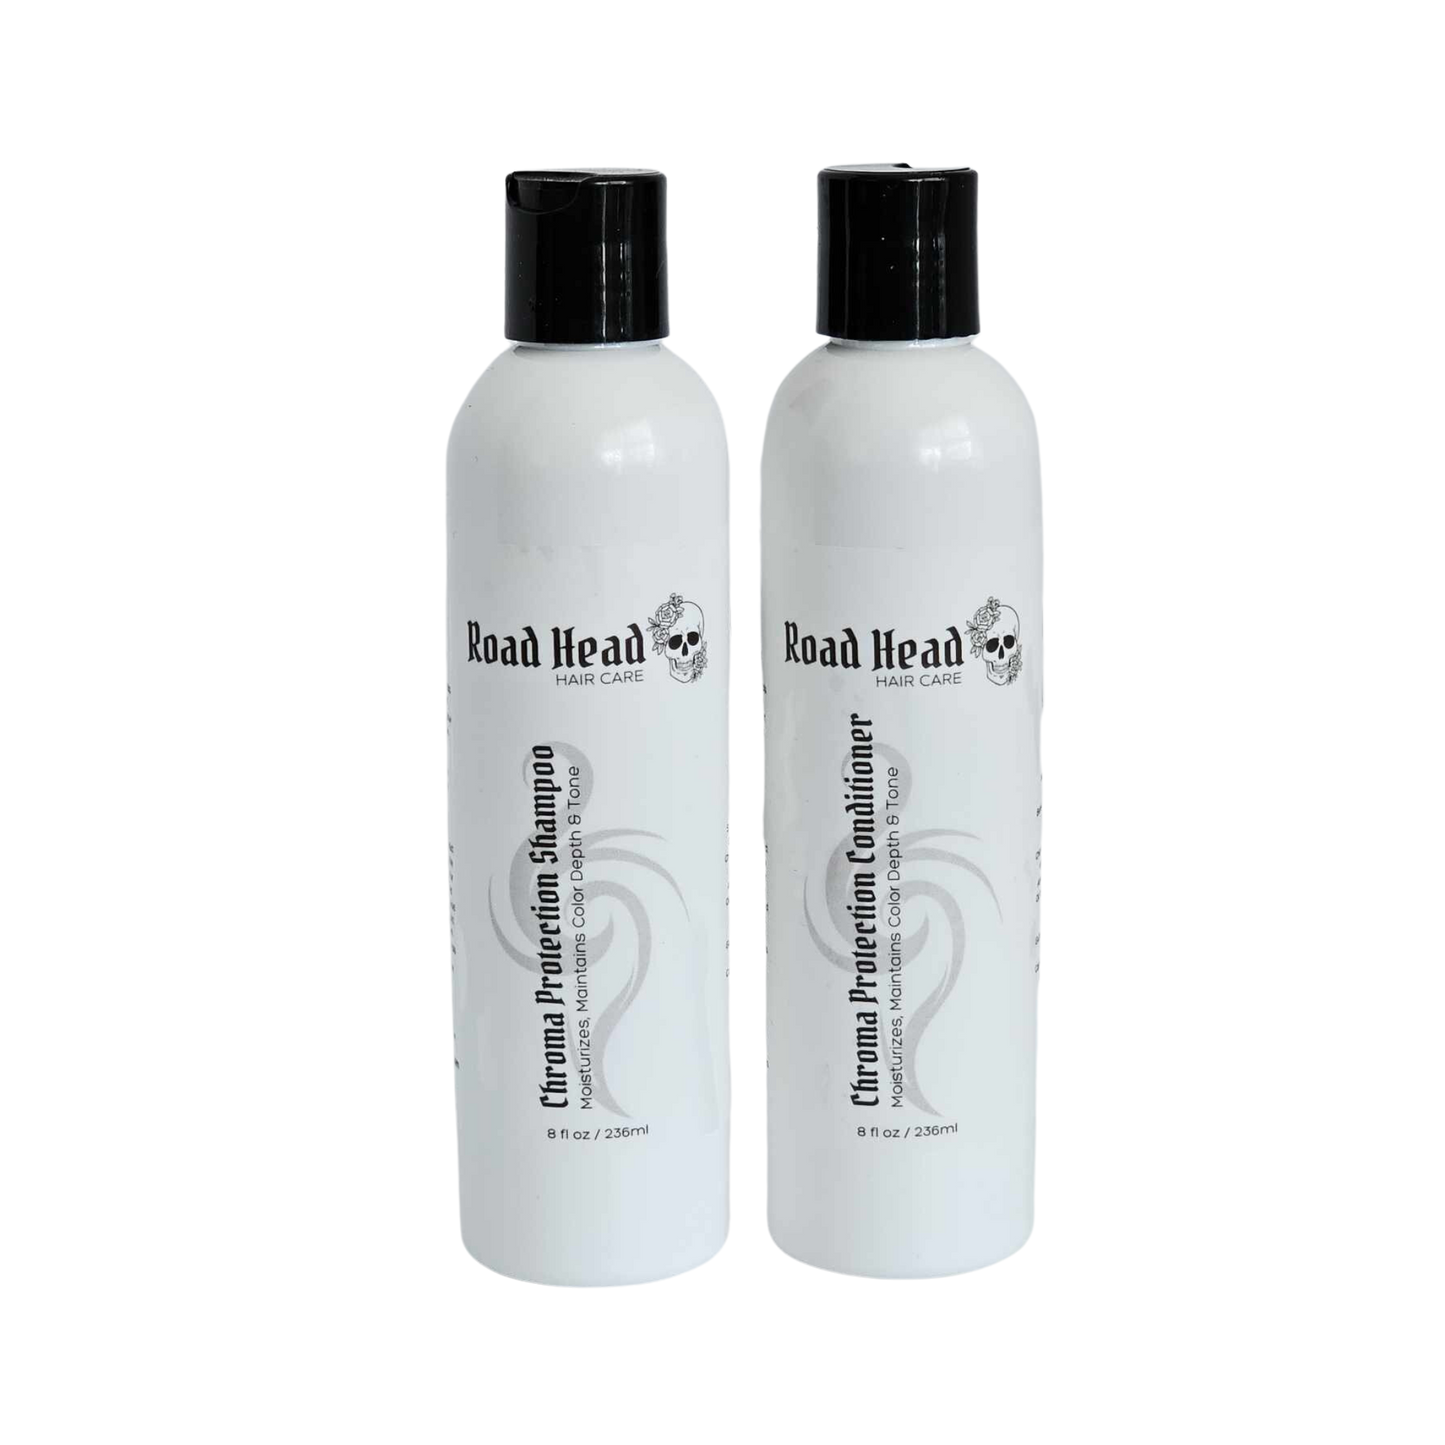 Chroma Protection Hair Shampoo | Color Safe Salon Formula Shampoo For Color Treated Hair